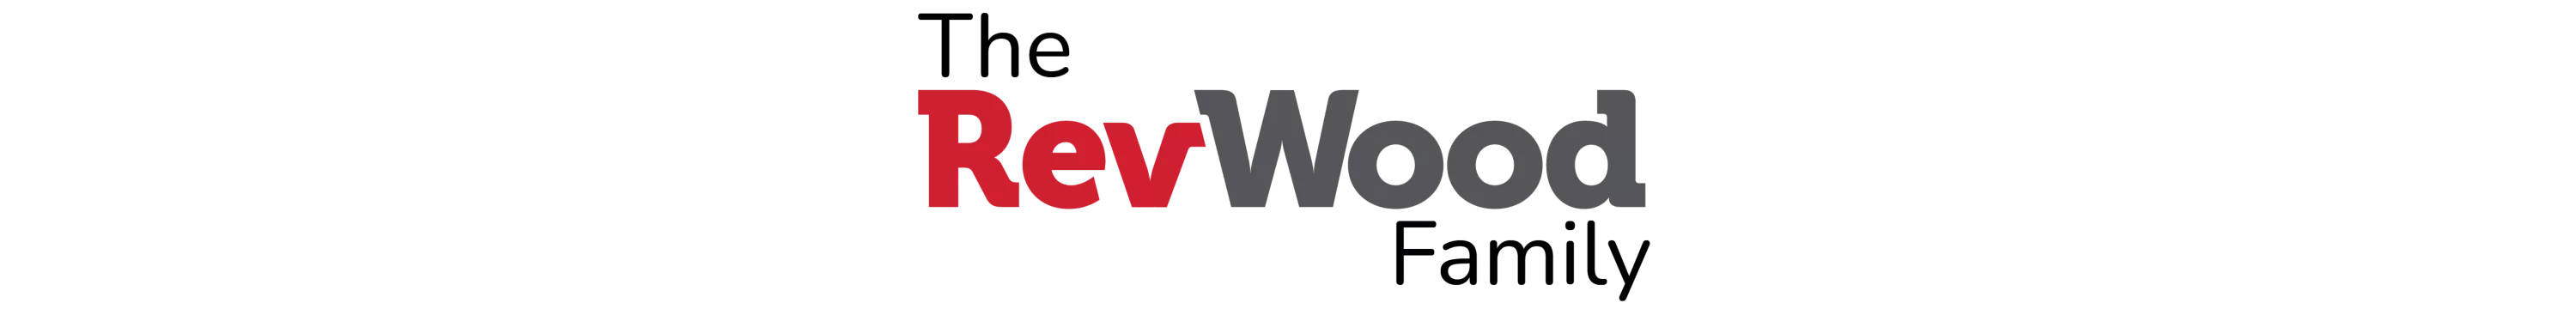 revwood family logo